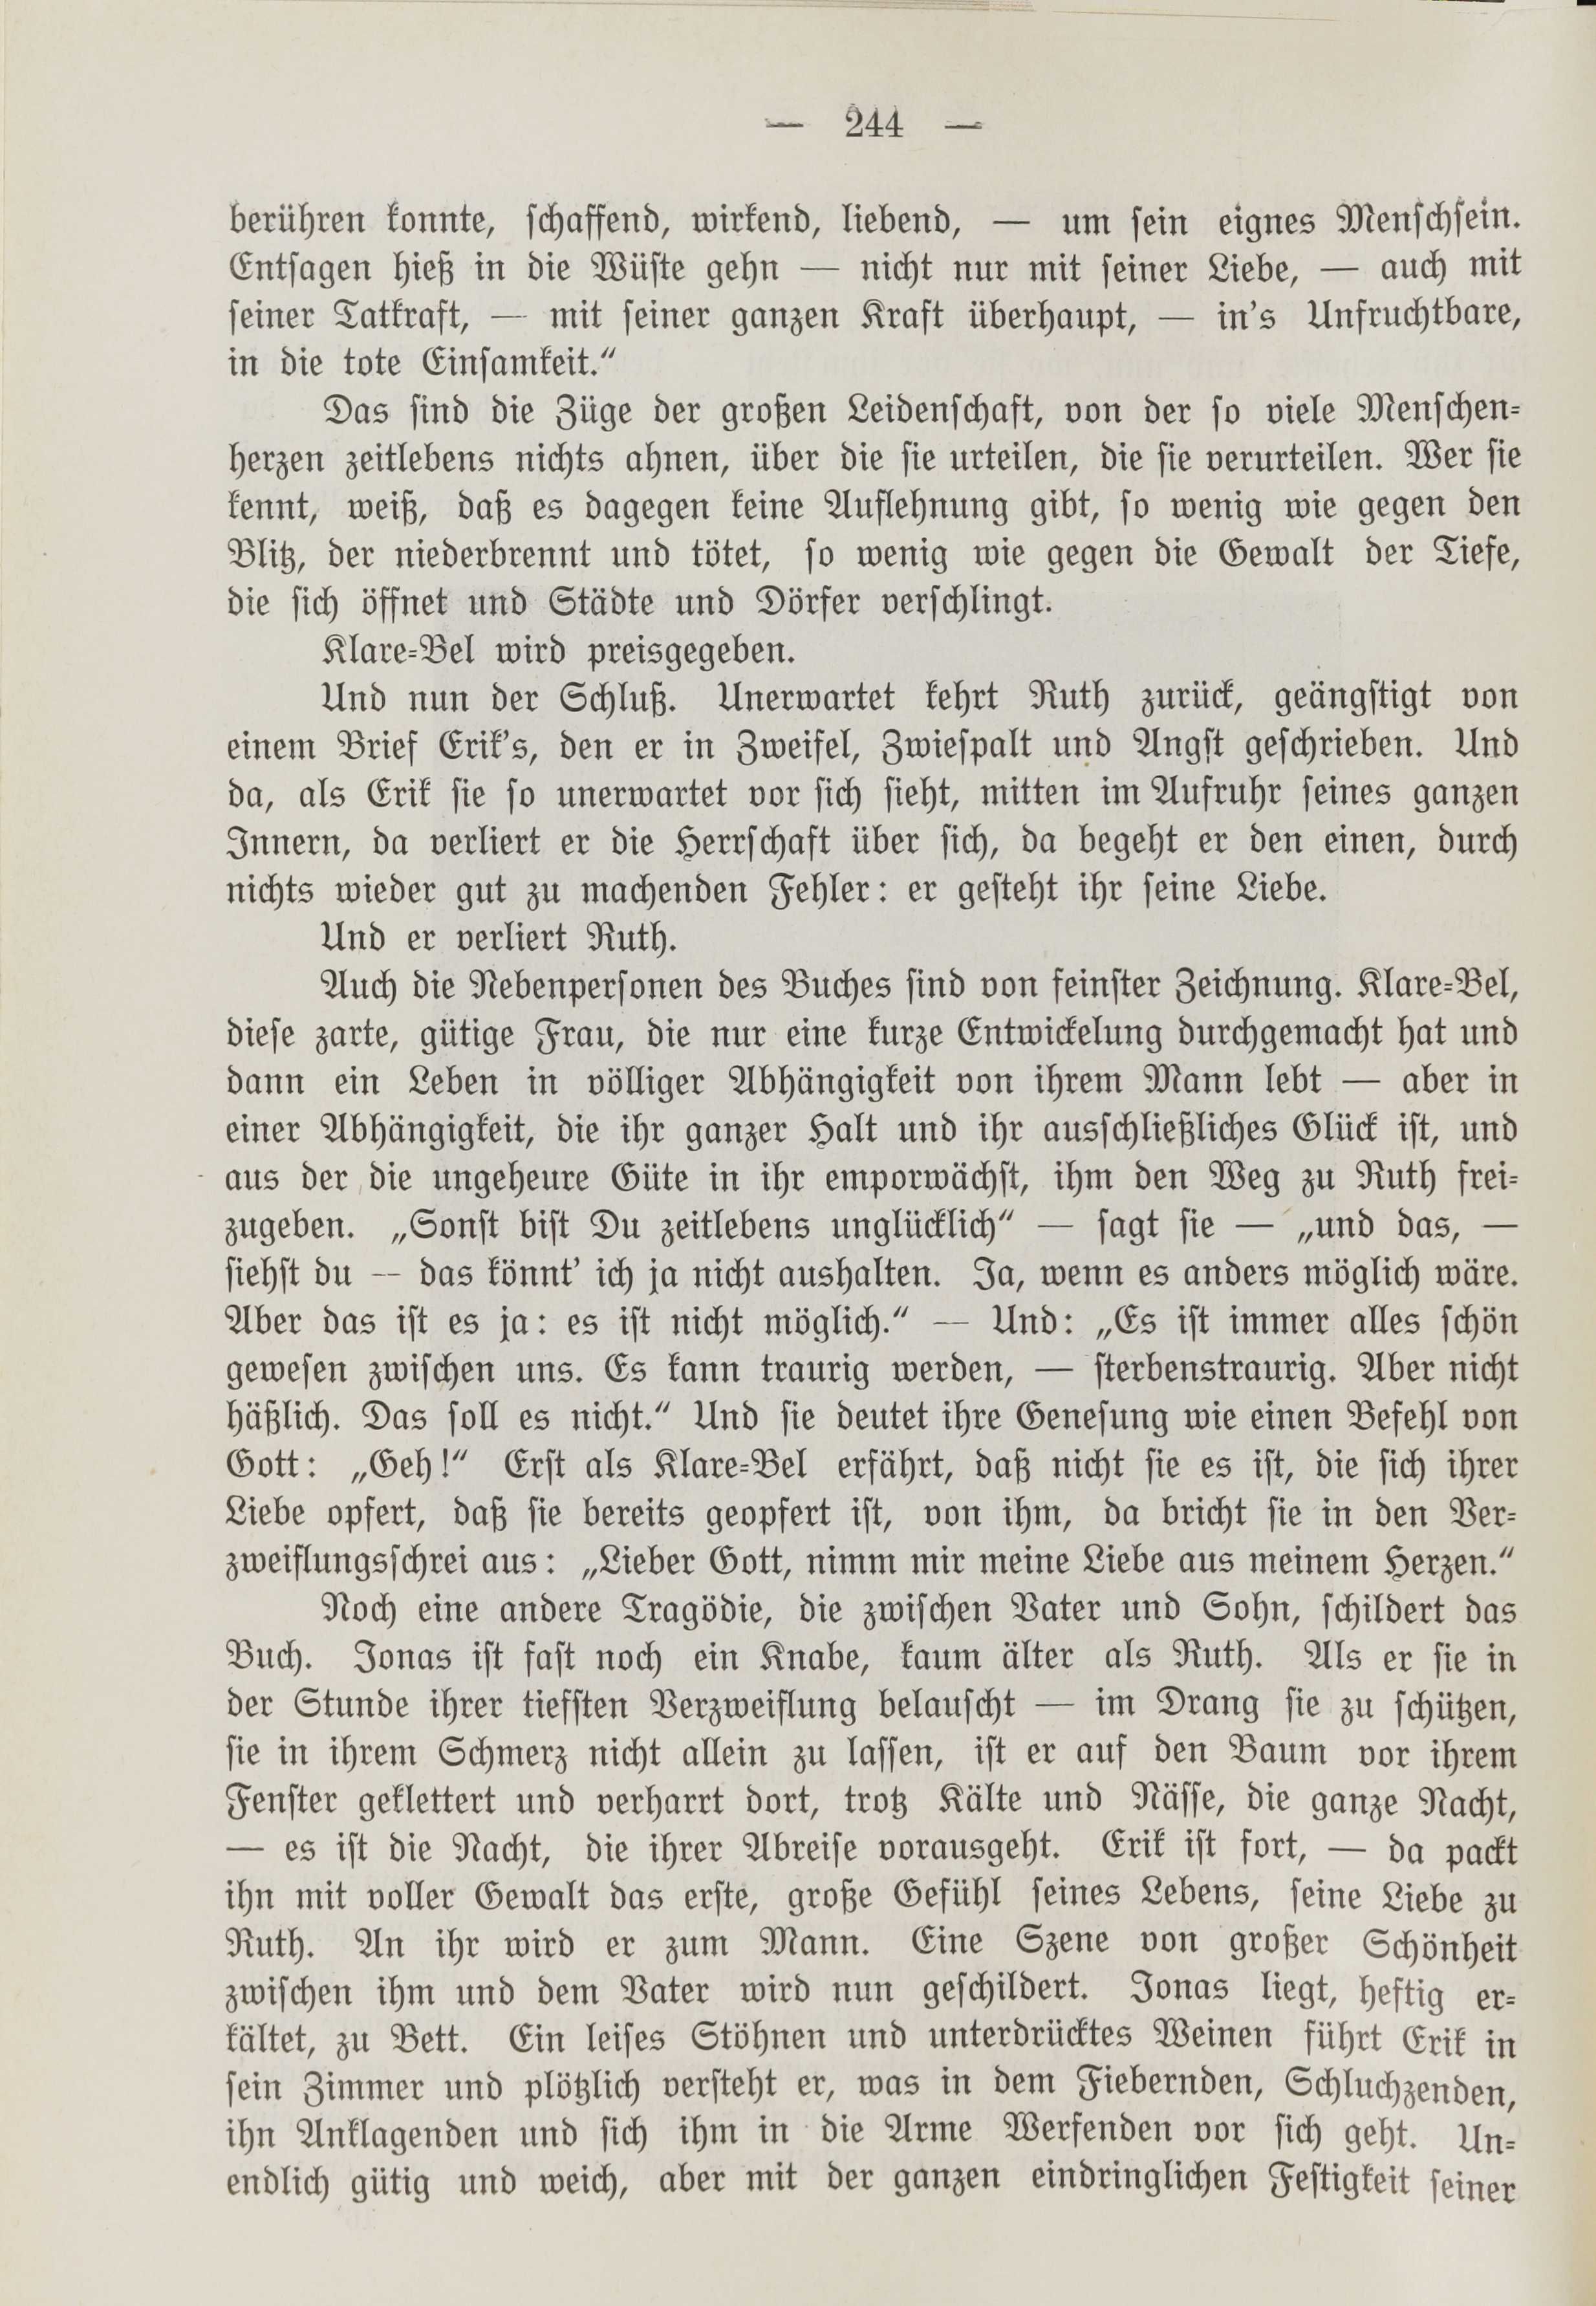 Deutsche Monatsschrift für Russland [1] (1912) | 252. (244) Основной текст